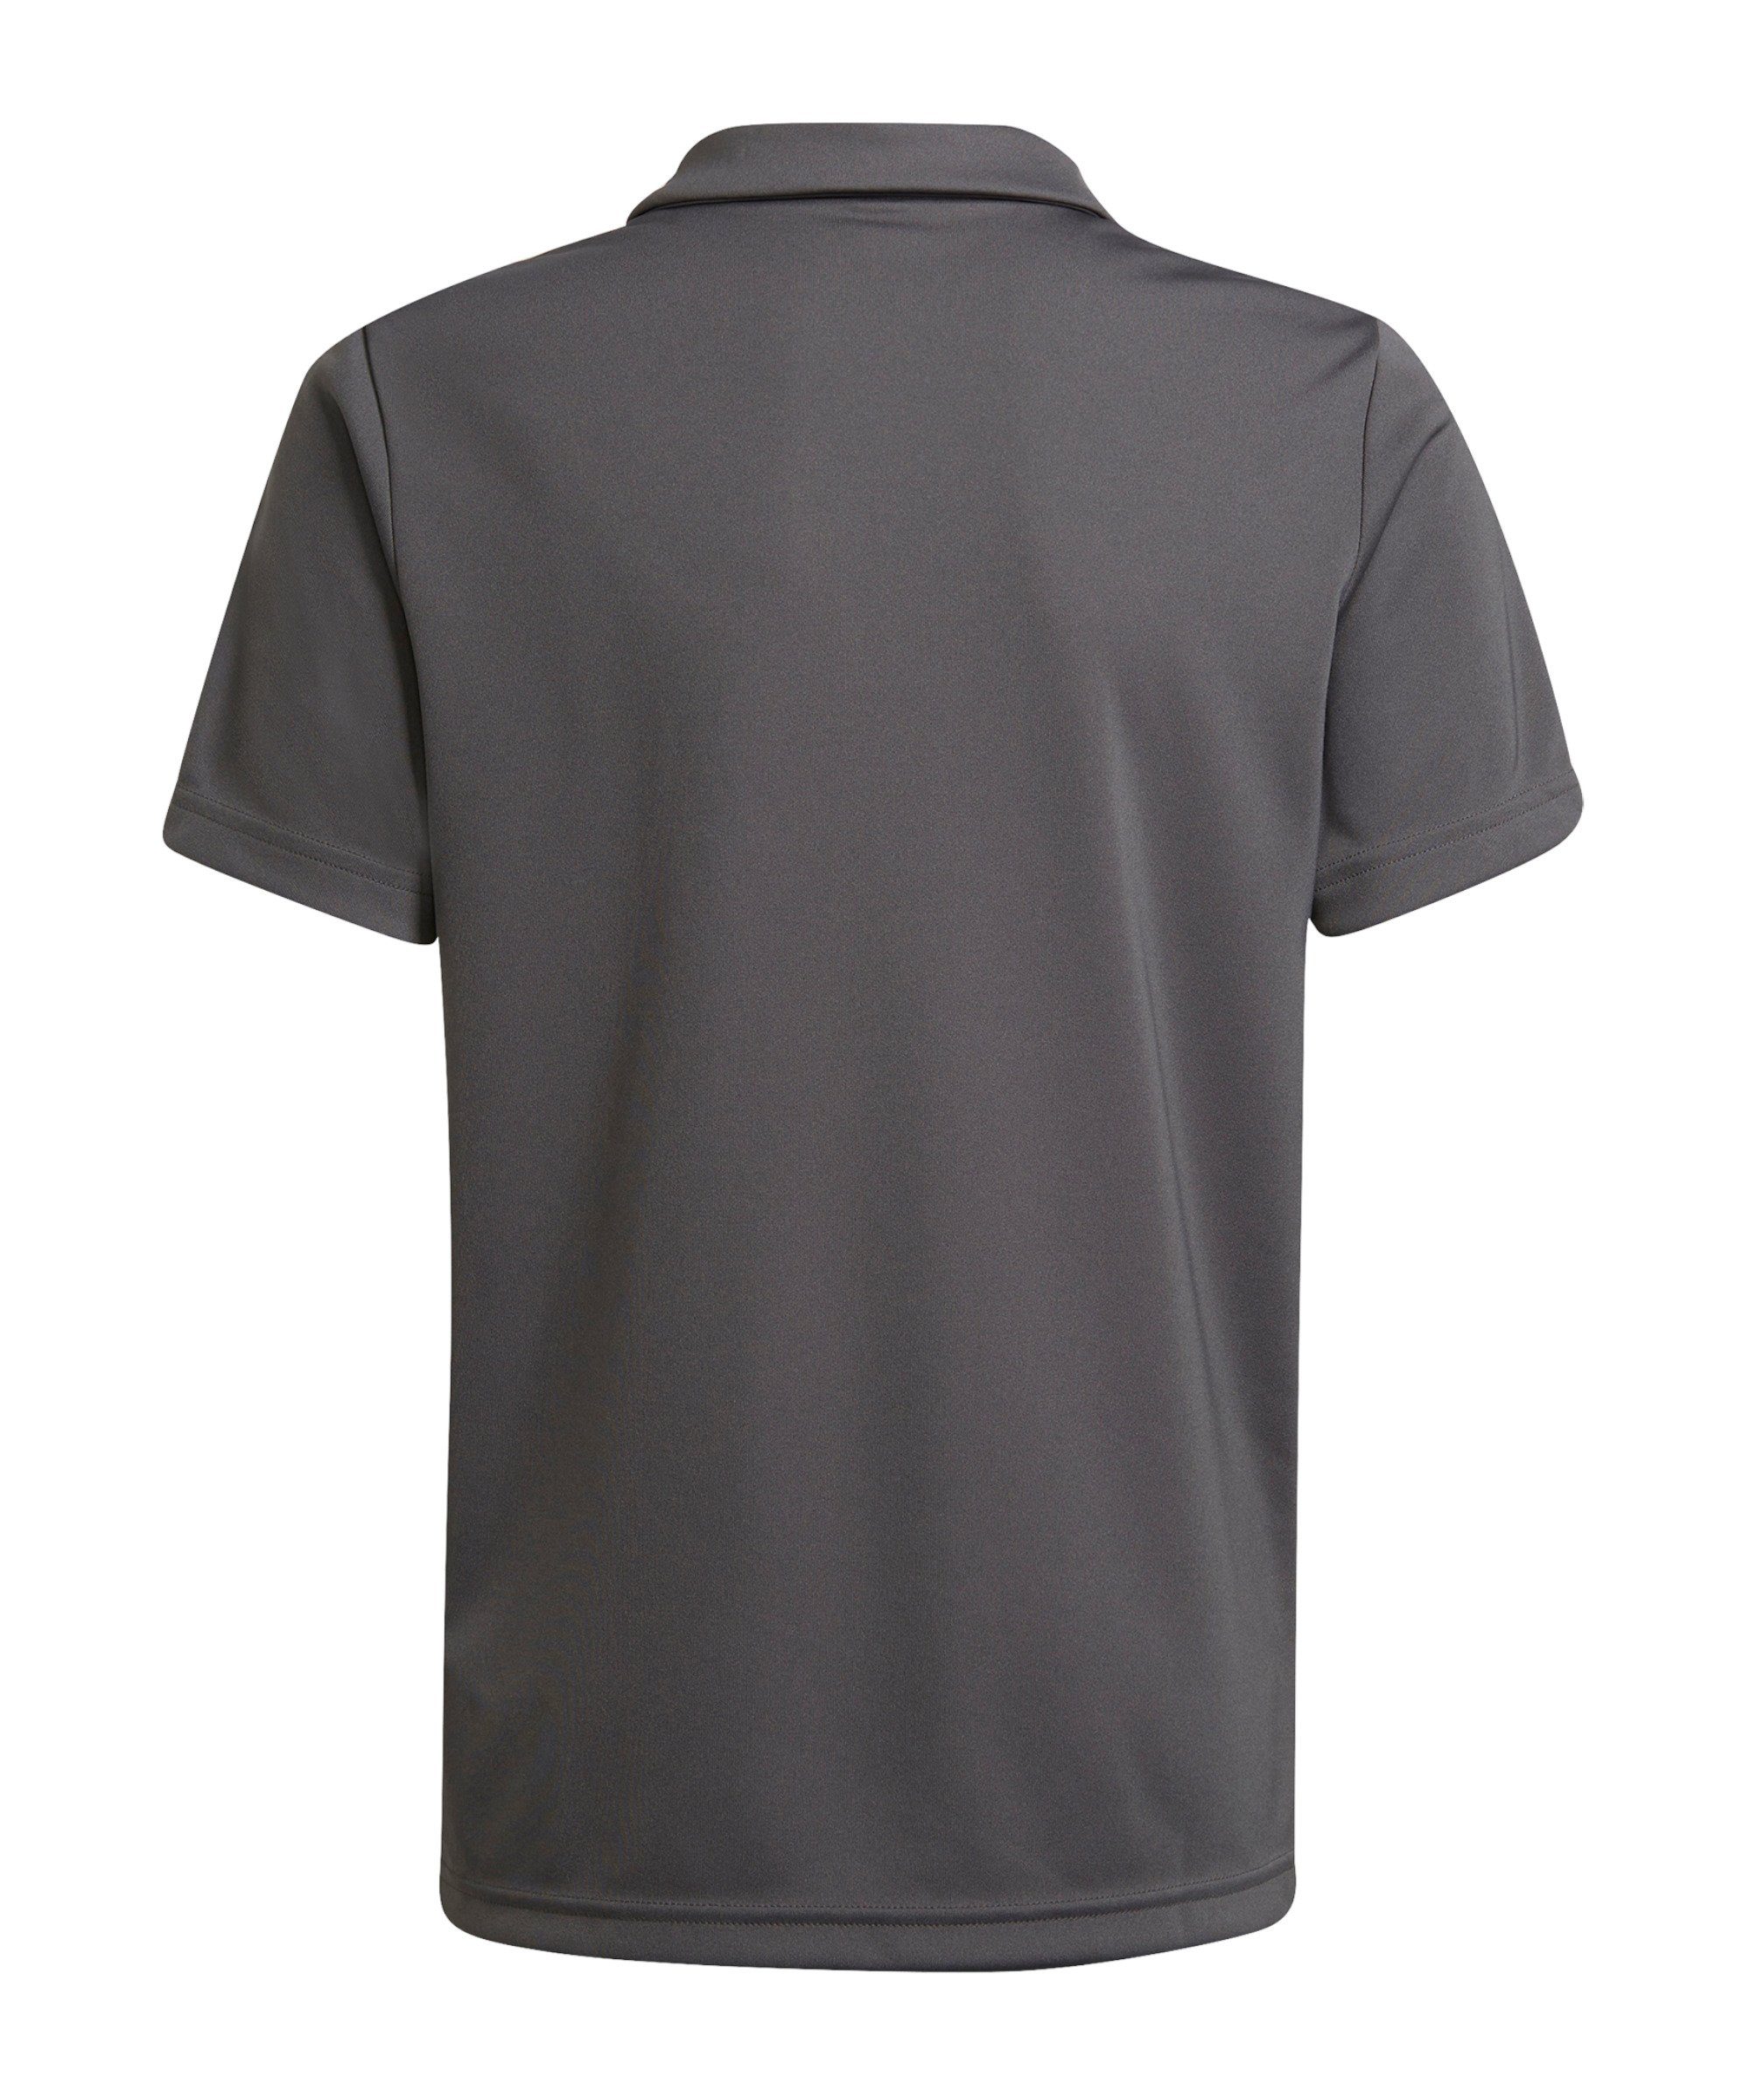 Entrada adidas default Performance Poloshirt T-Shirt 22 grau